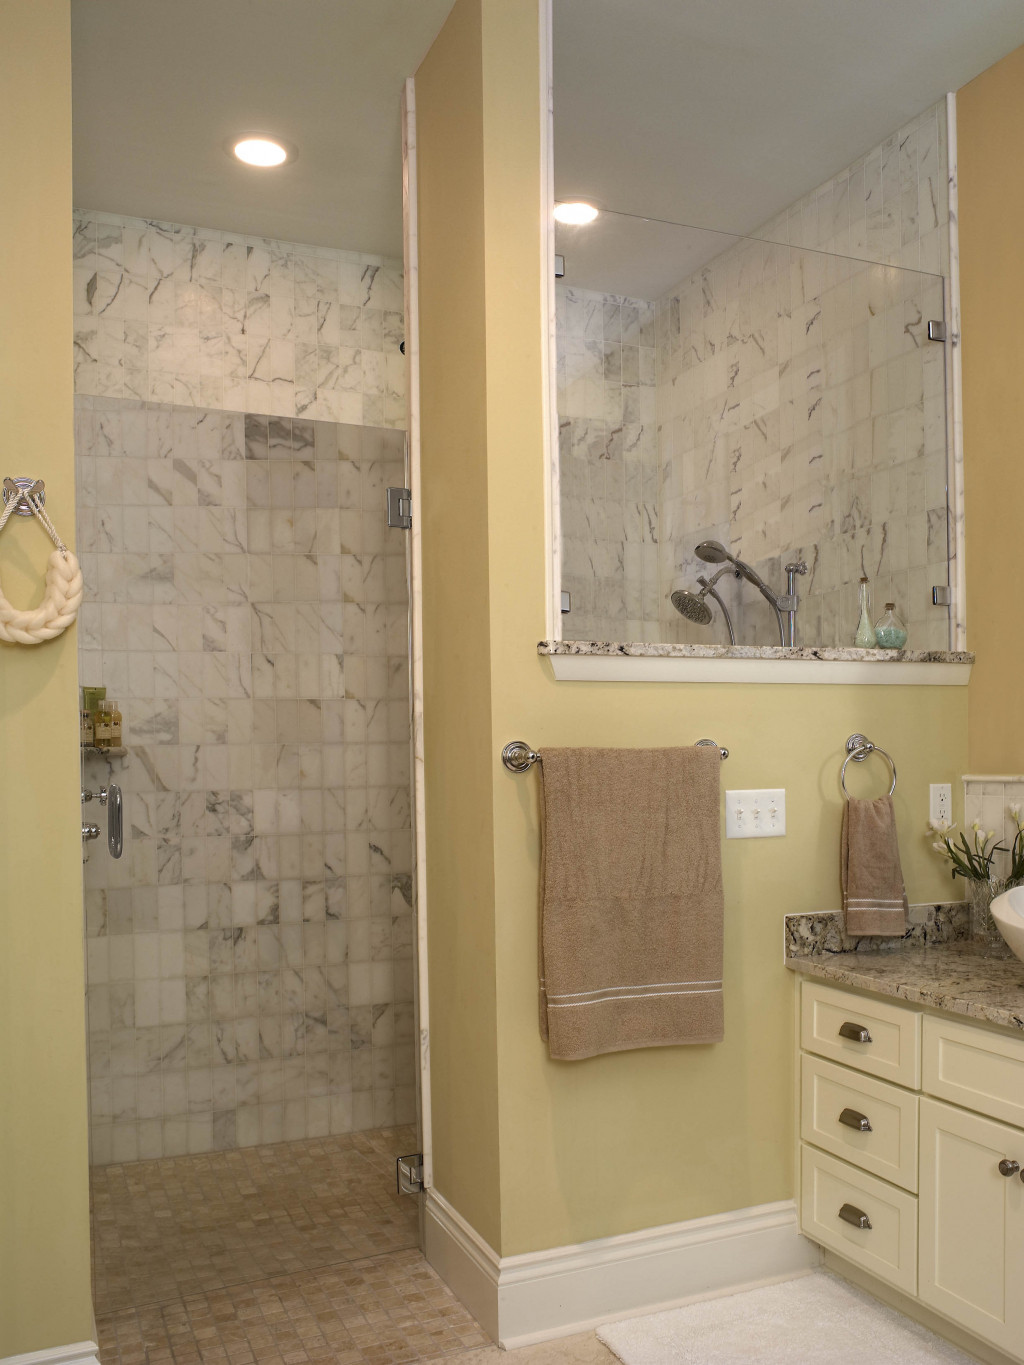 Doorless Shower For Small Bathroom
 Doorless Shower In Small Bathroom Designs For Bathrooms